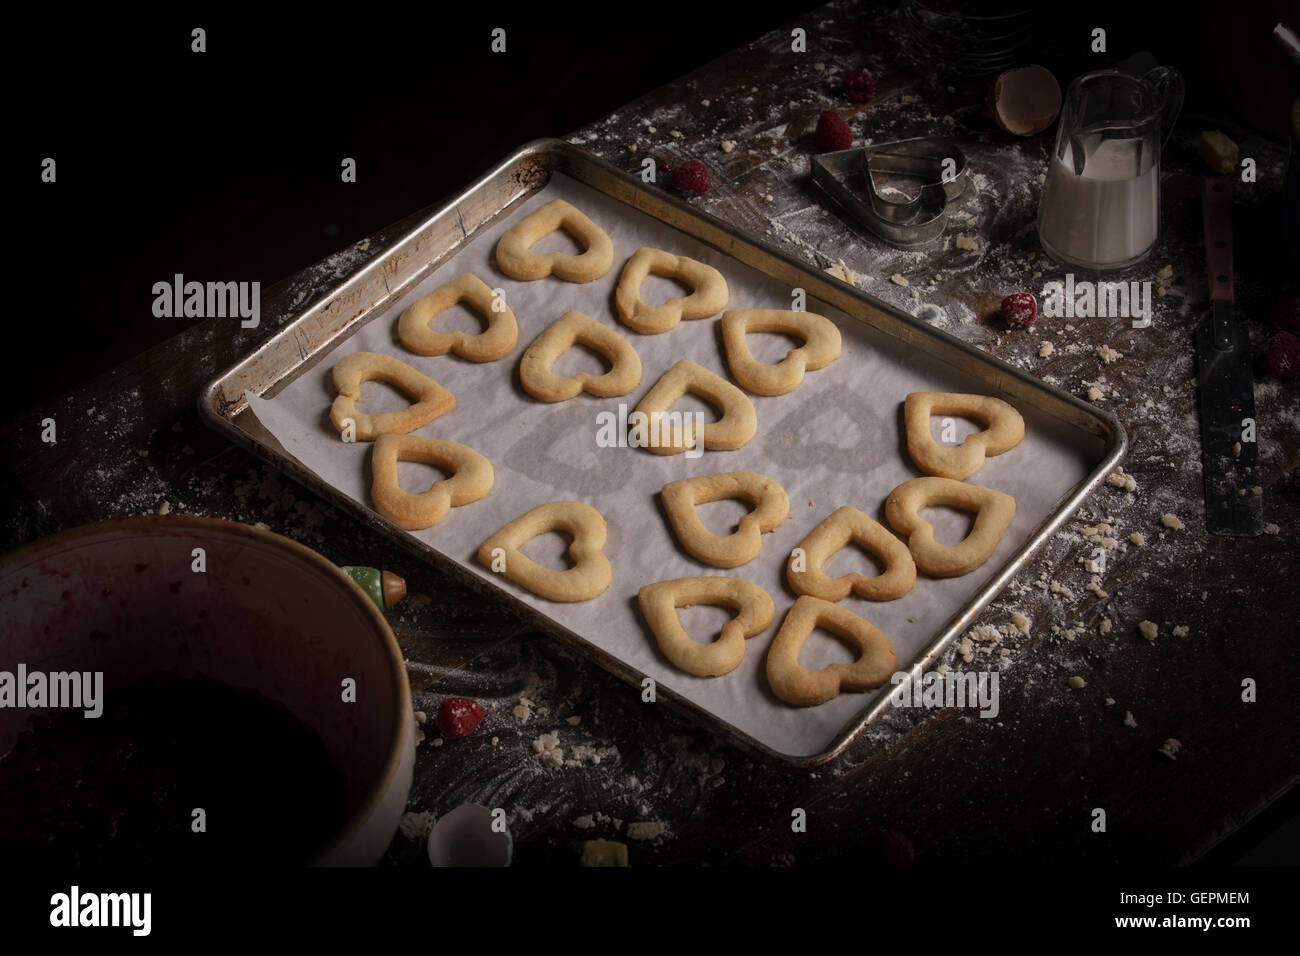 La Saint-Valentin, high angle view d'une plaque de cuisson avec des biscuits en forme de coeur. Banque D'Images